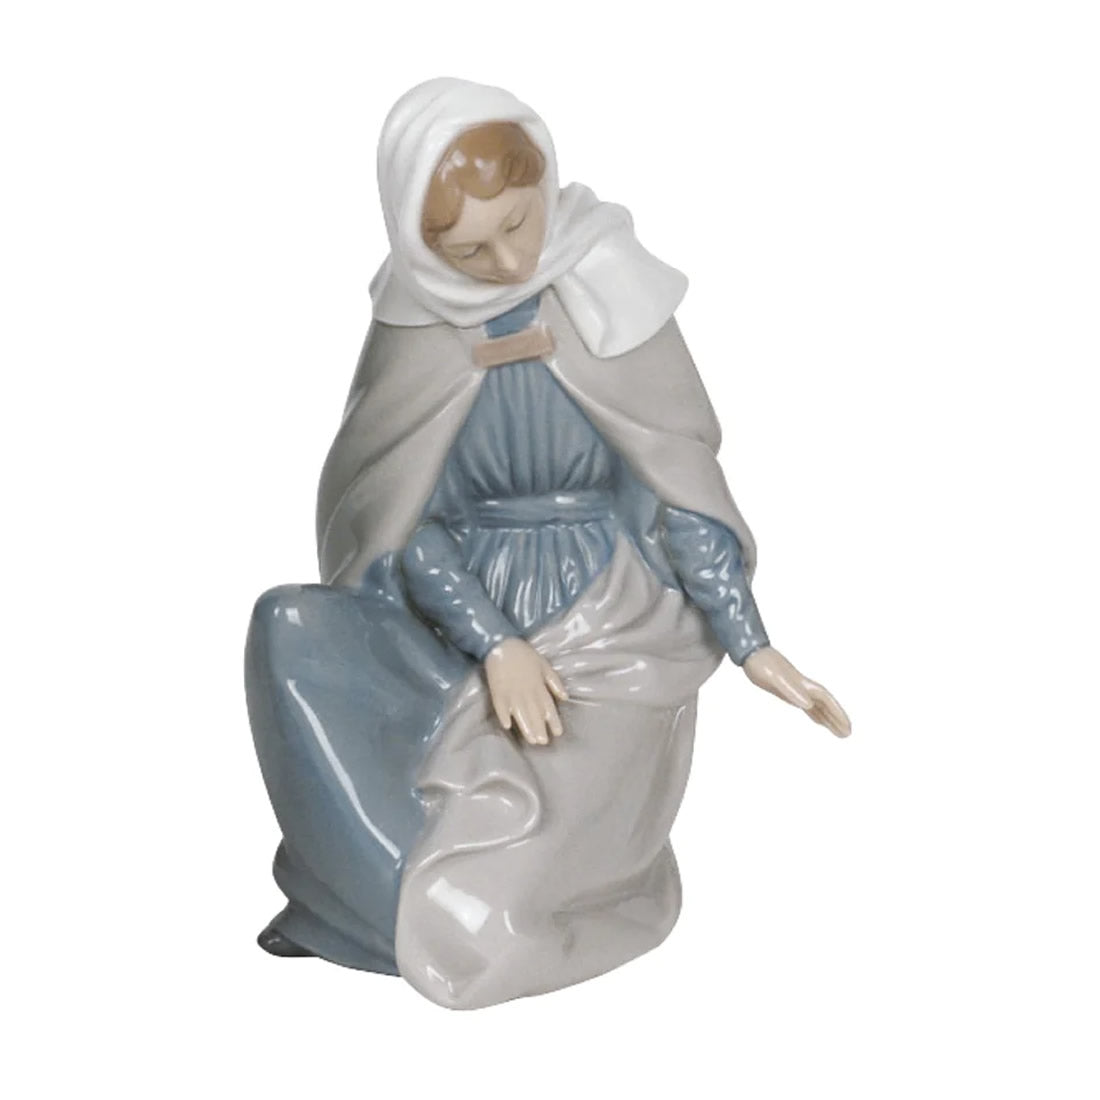 Virgin Mary Porcelain Figurine